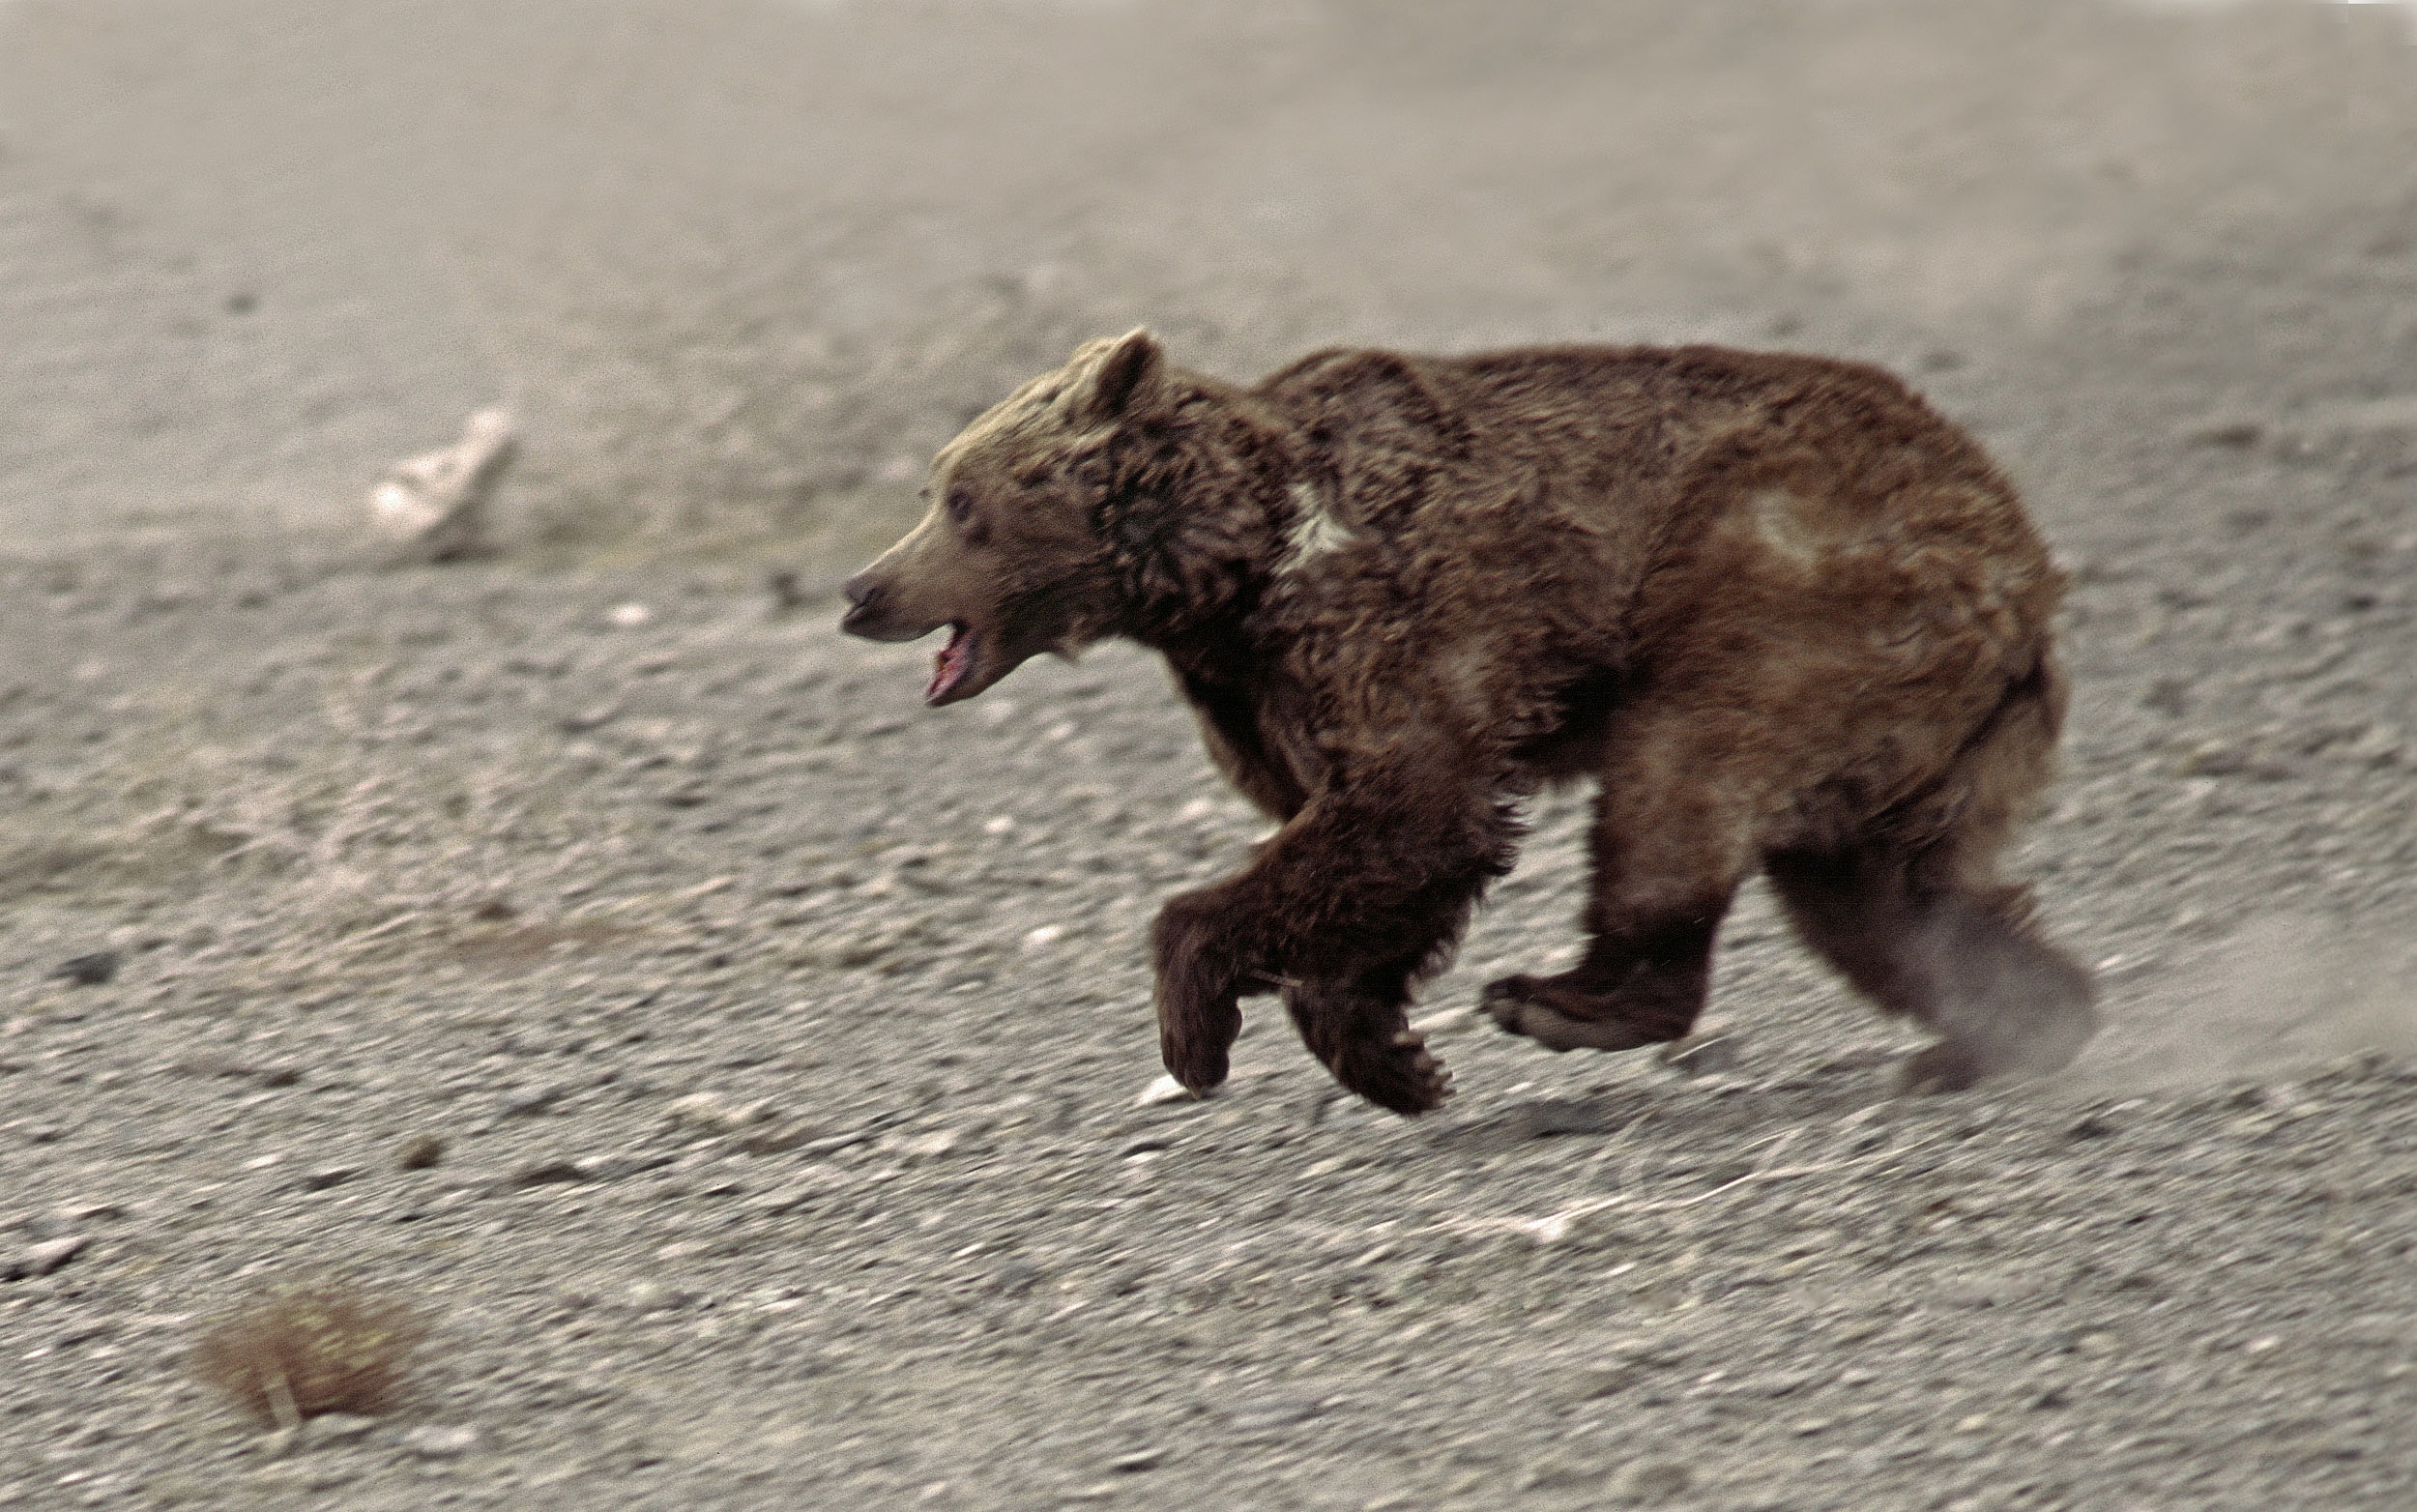 Gobi Bear running, Gobi National Park, Mongolia Eric Dragesco